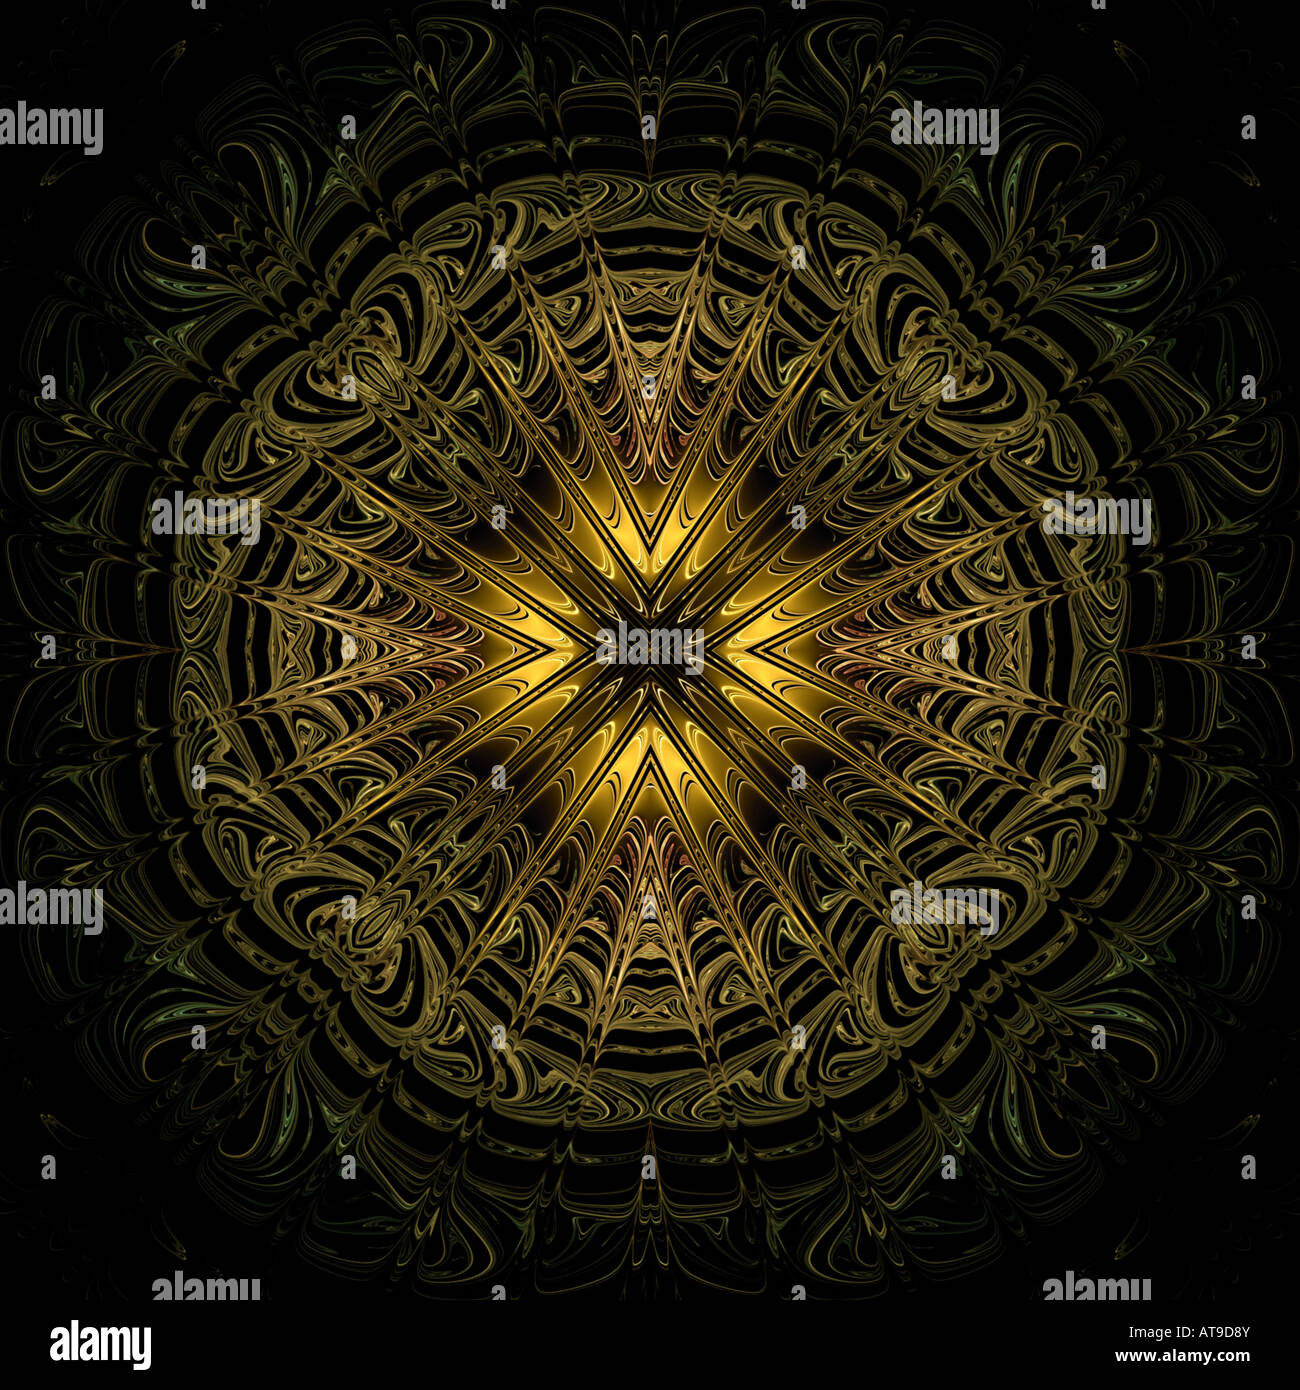 Abstract fractal ressemblant à un mandala en filigrane d'or Banque D'Images